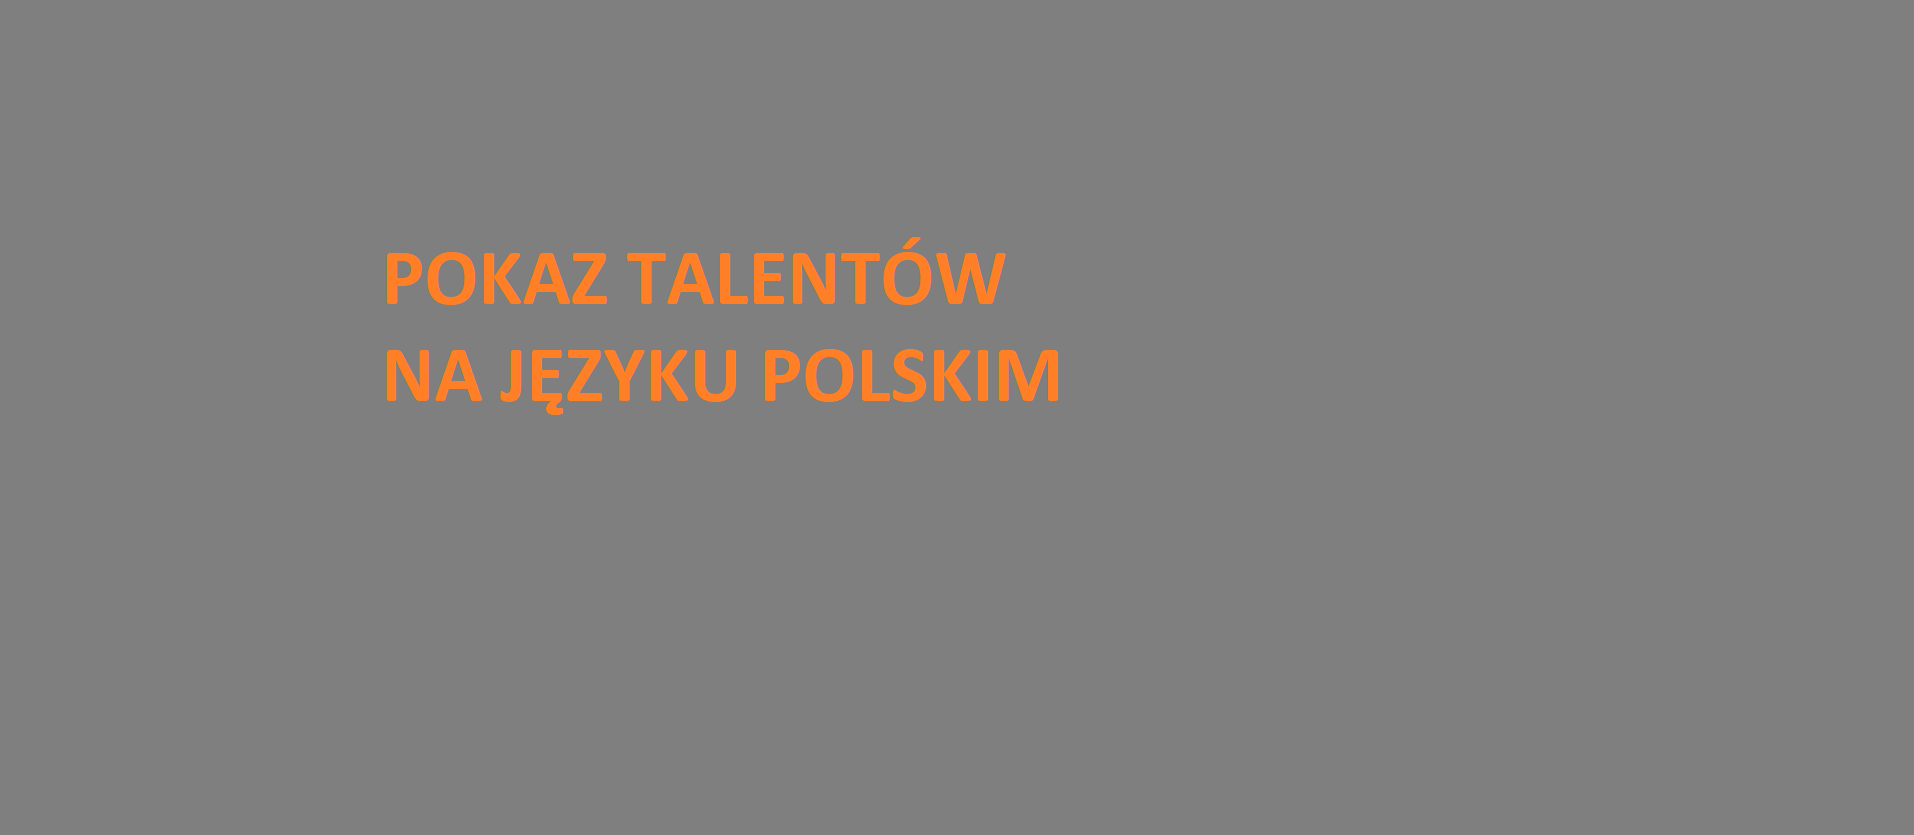 ,,Przypowieści o talentach''  - pokaz talentów na języku polskim.